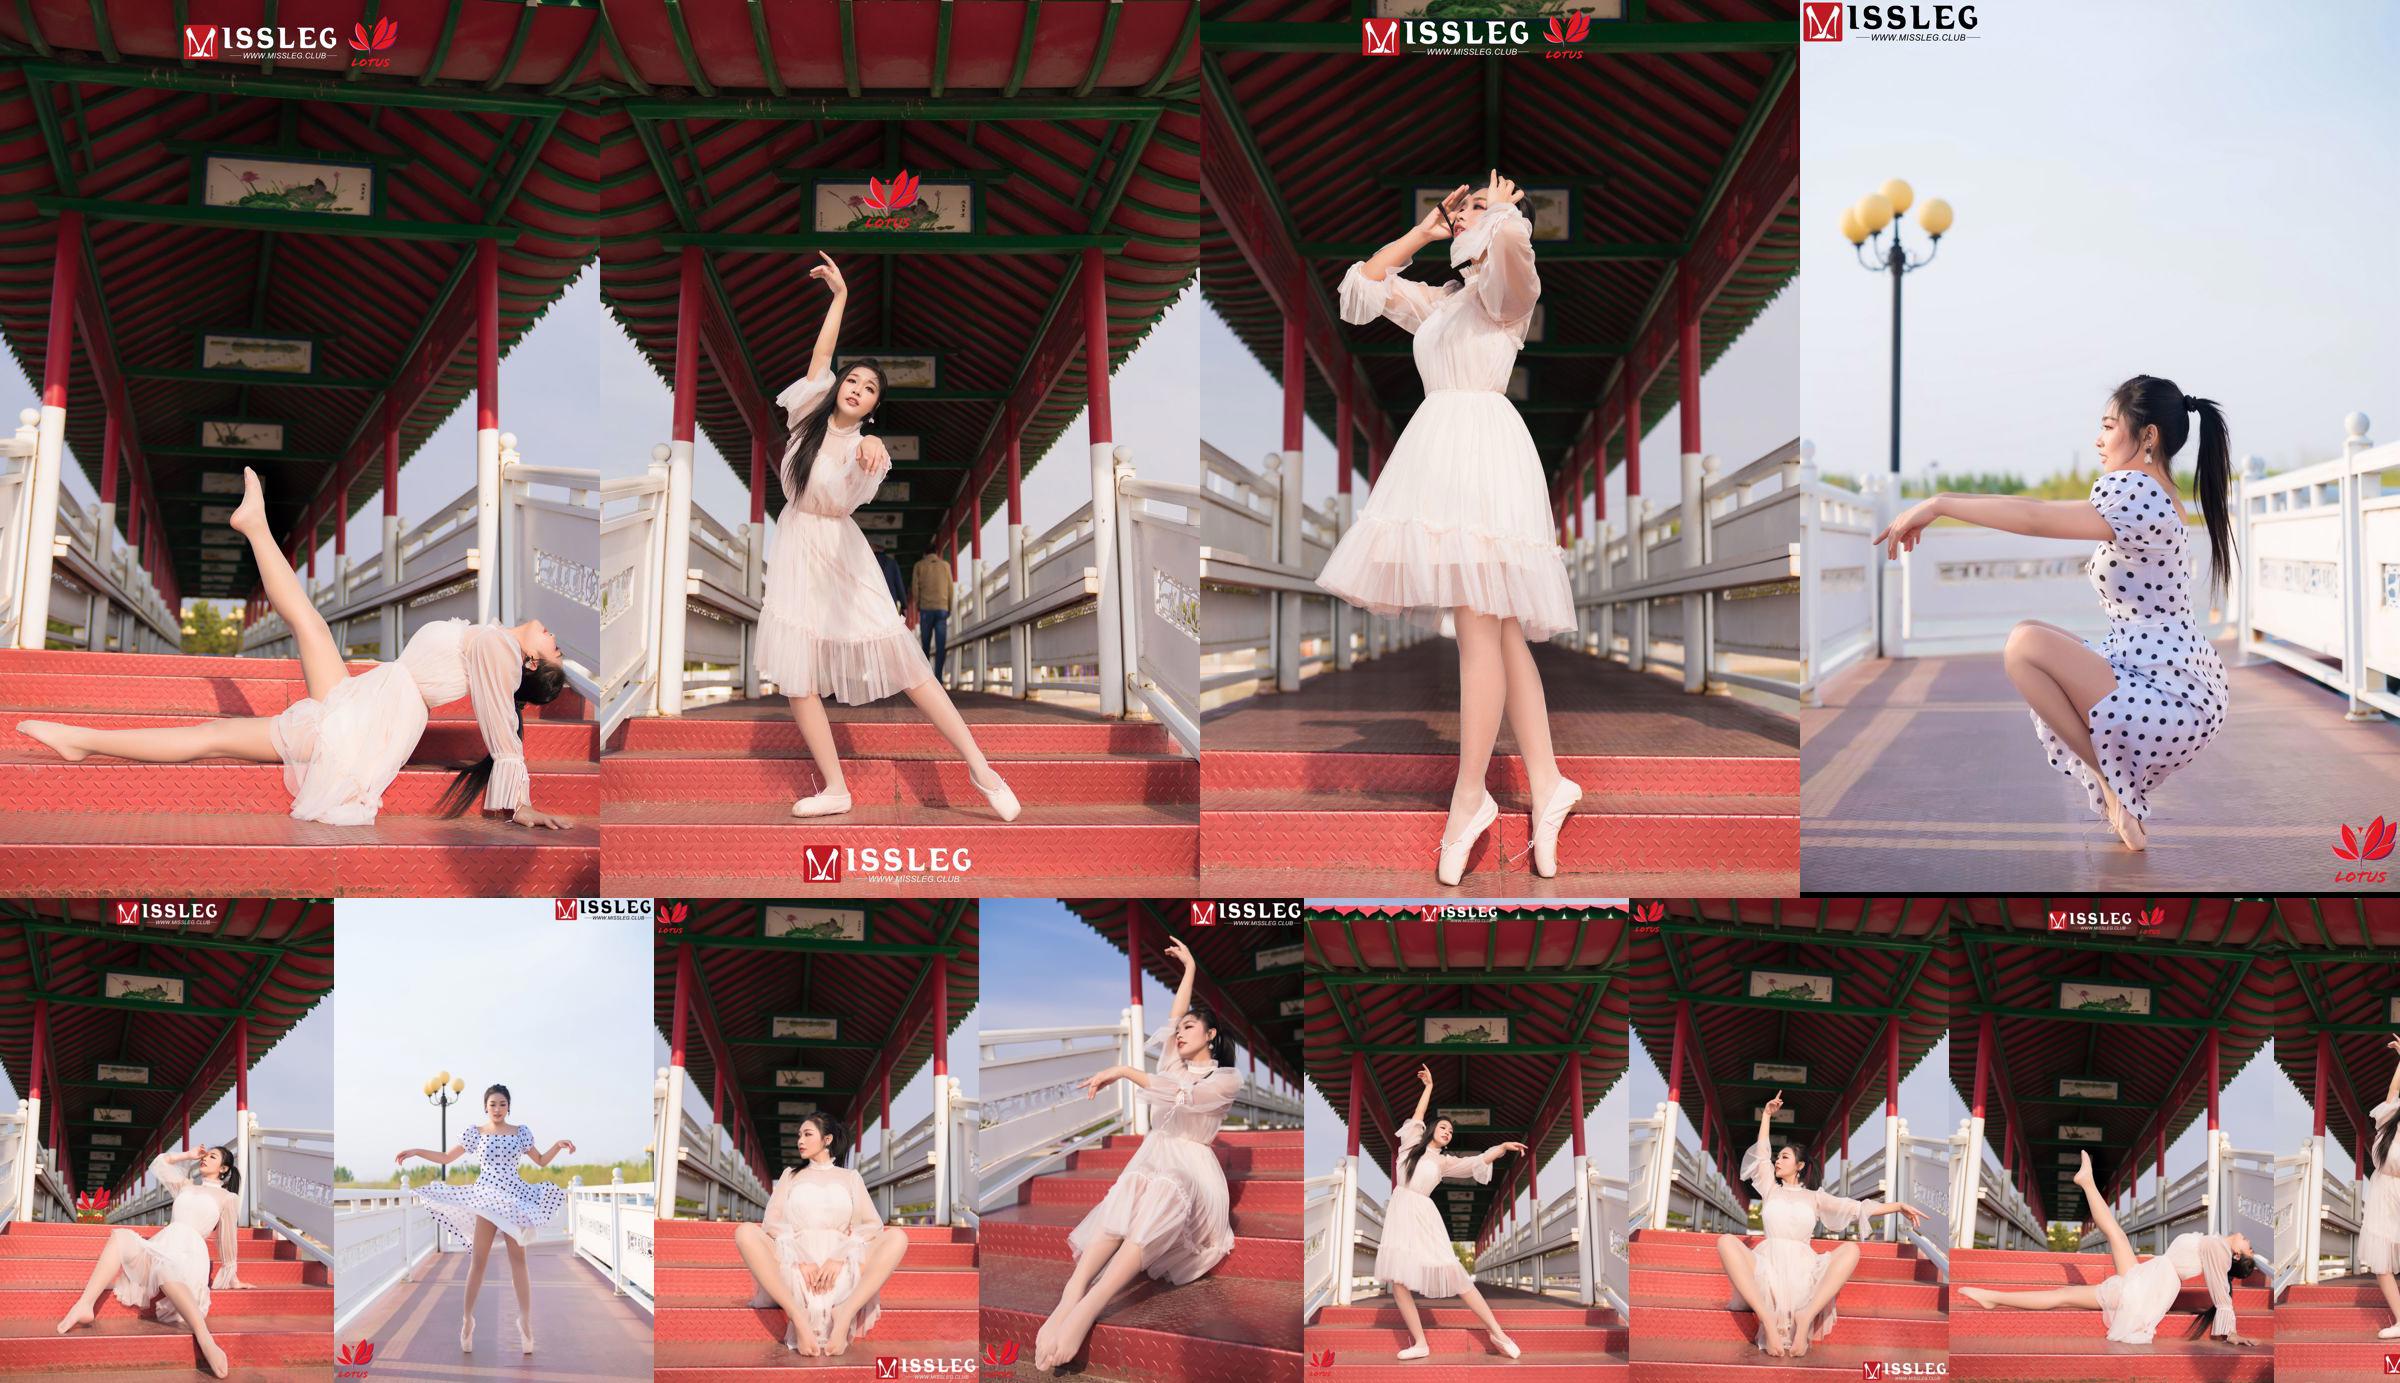 [蜜丝MISSLEG] M018 Imp 3 "Scenic Dancer" No.138849 Page 1